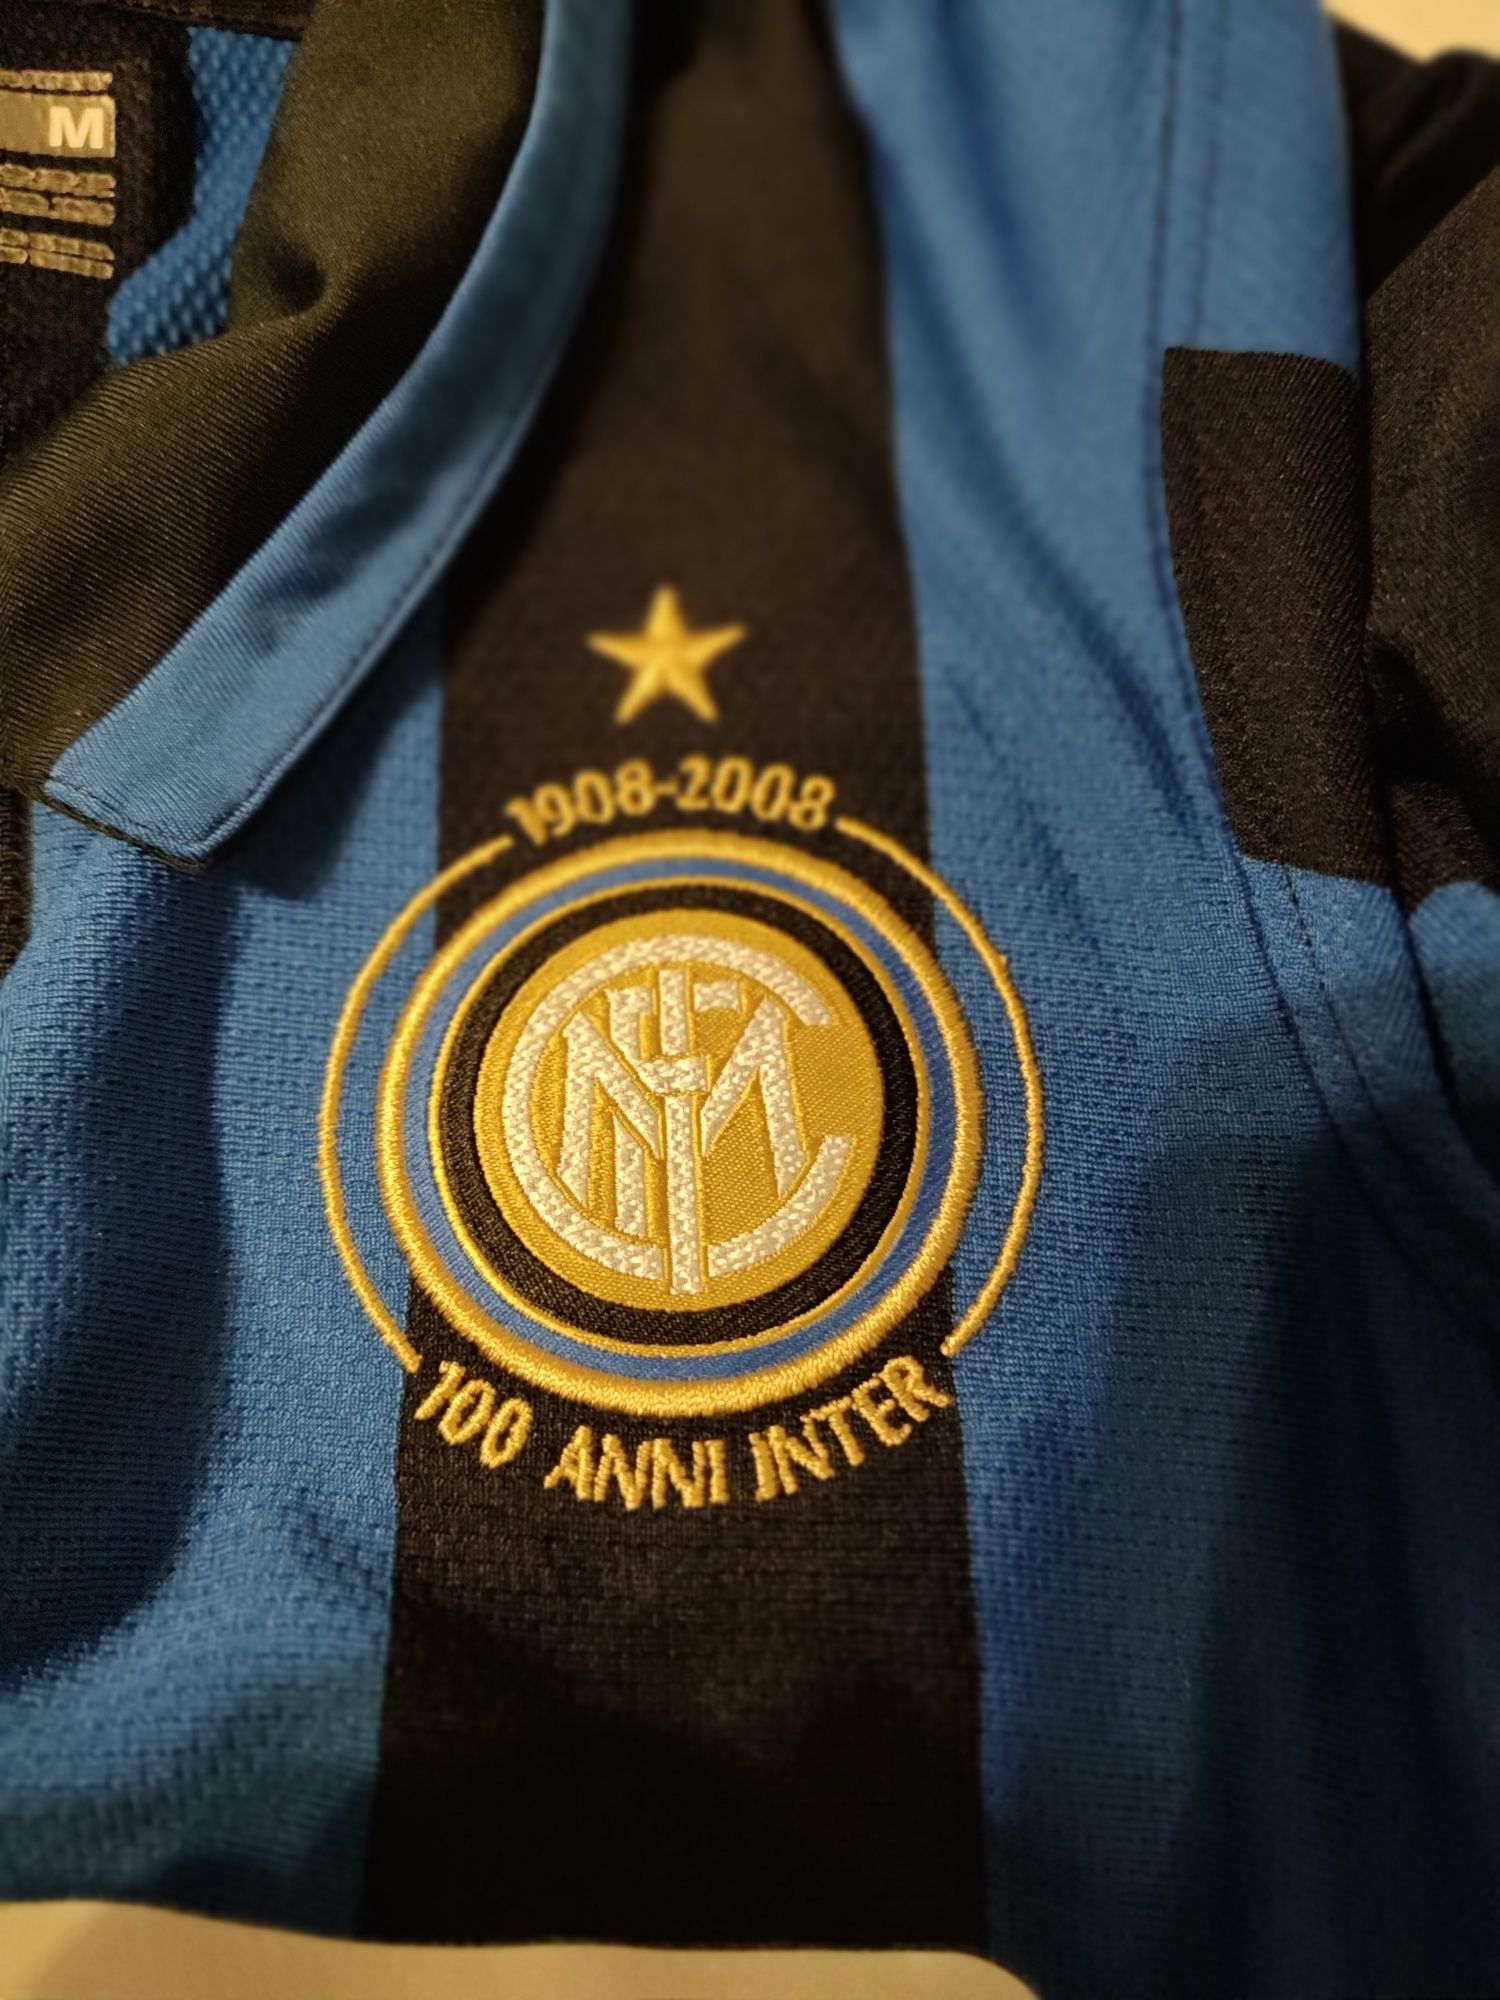 FC Internazionale Milano(Inter) tricou centenar